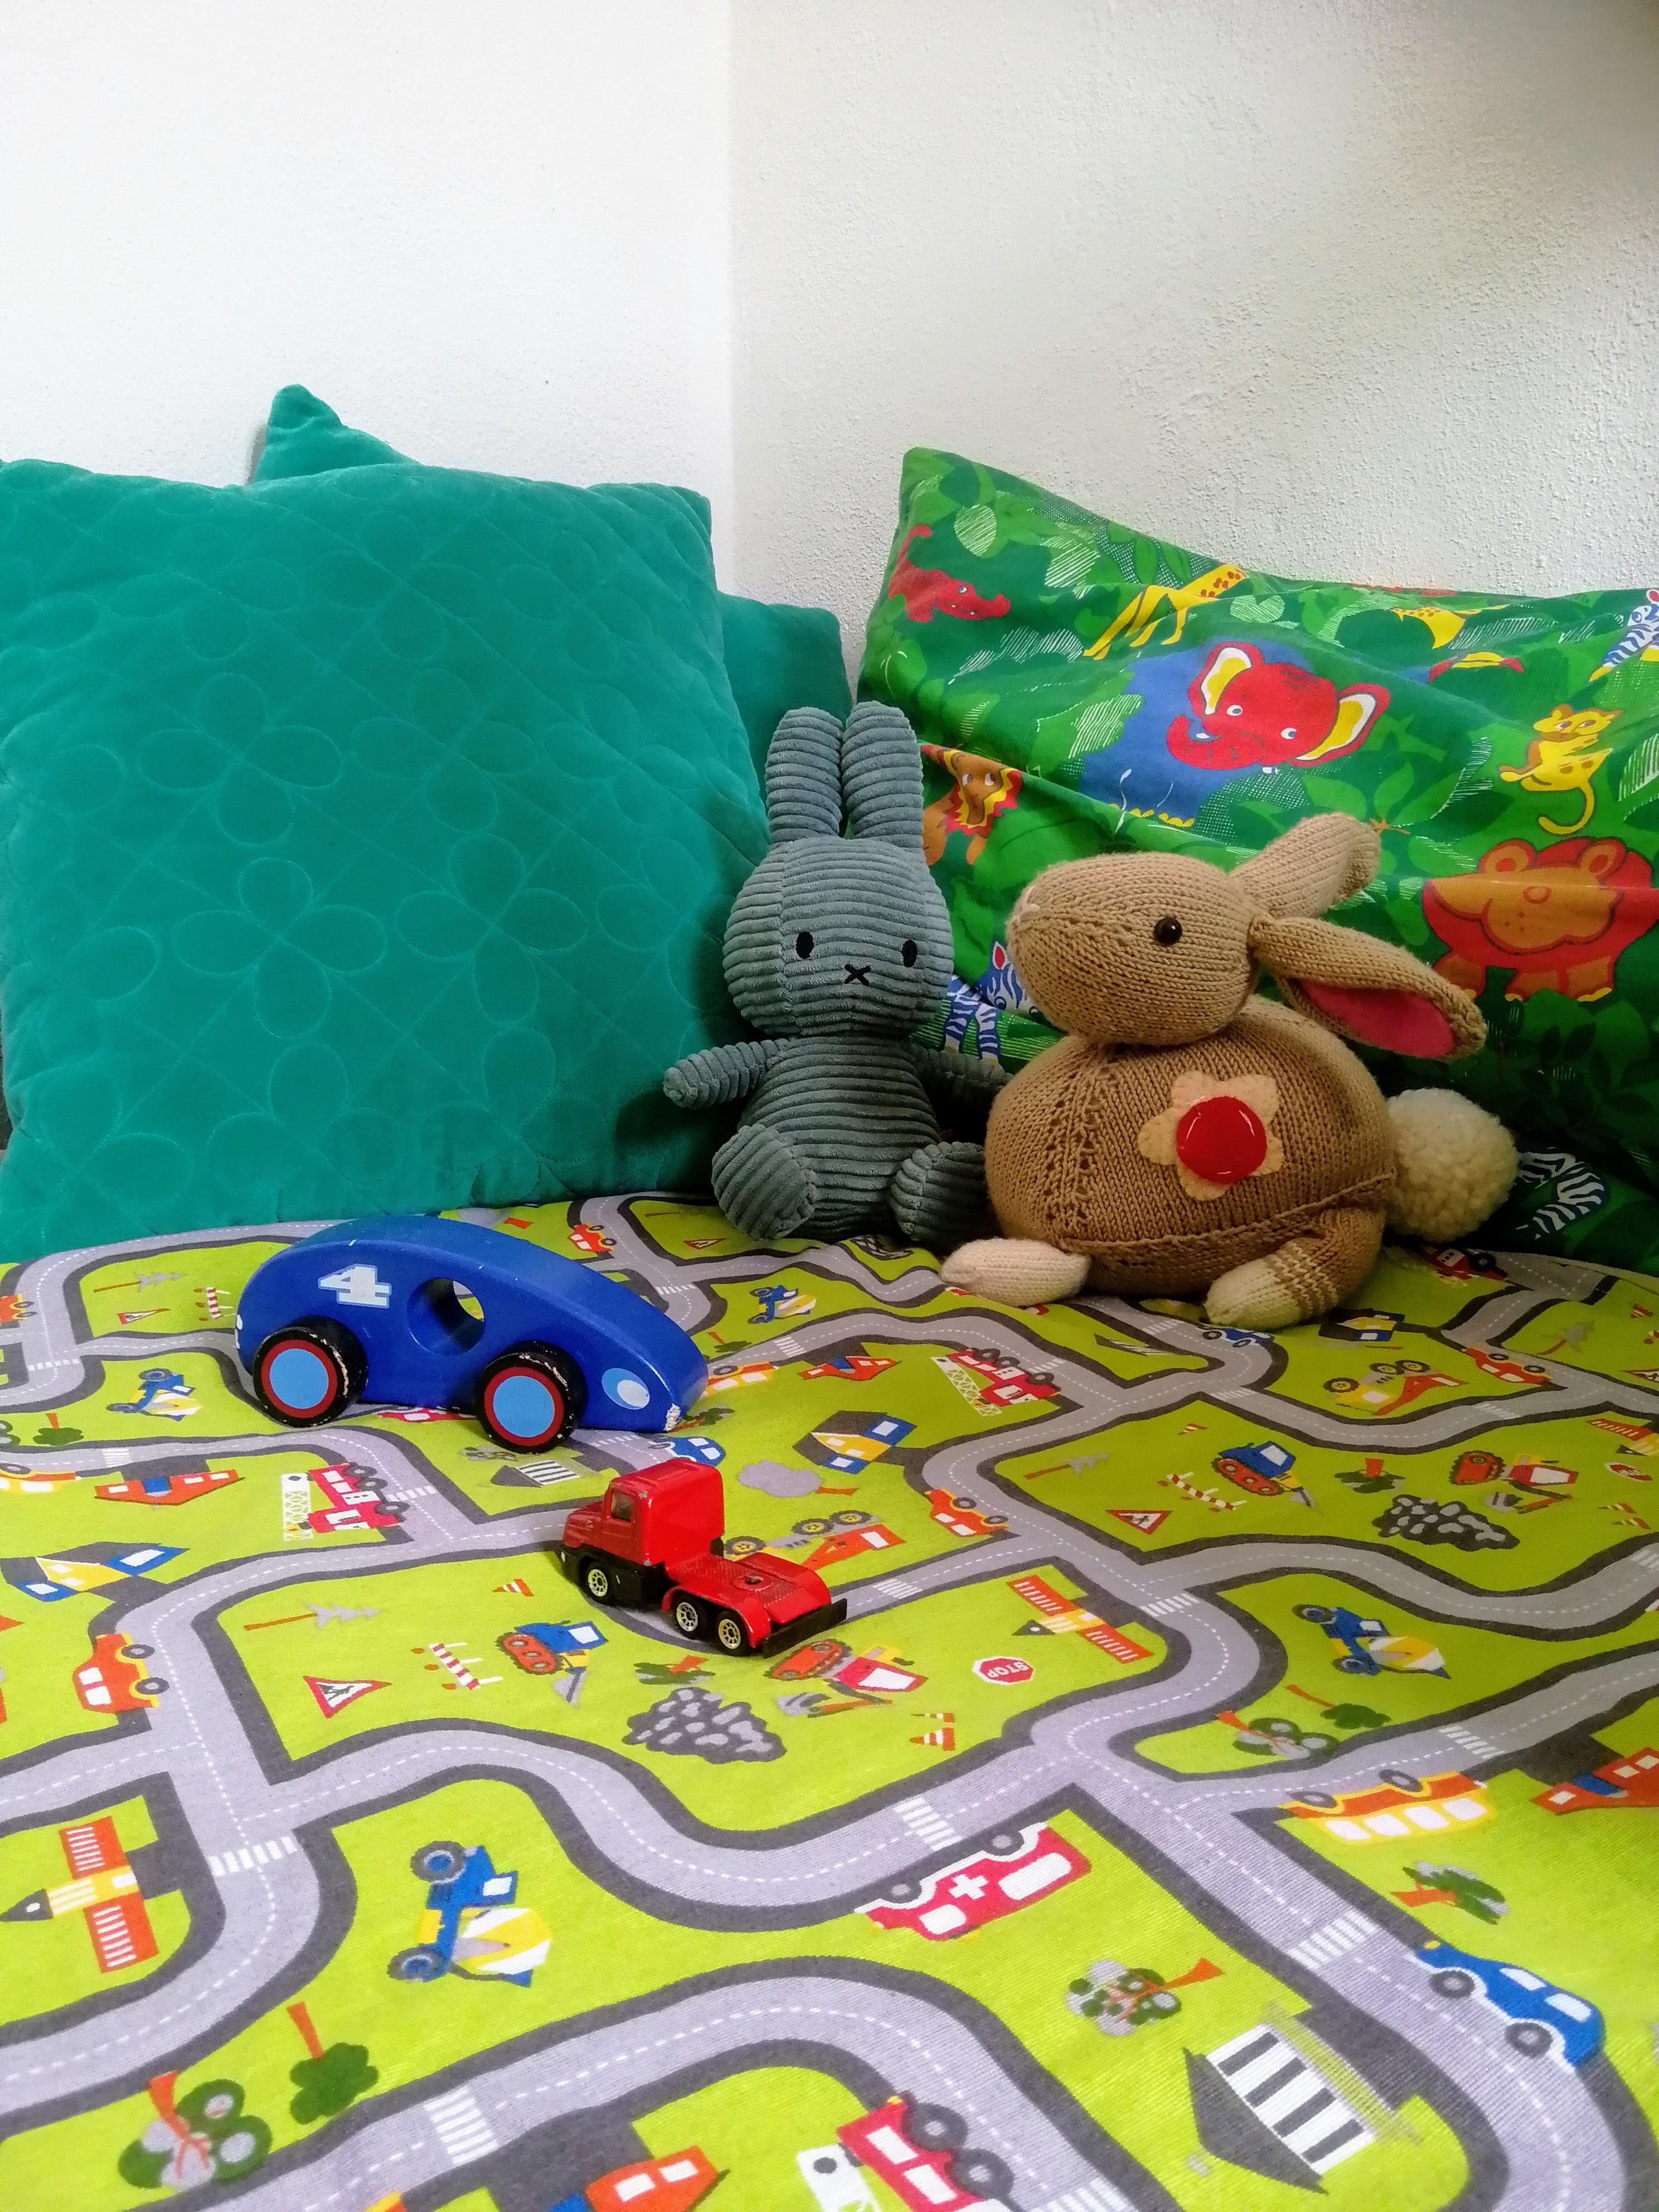 Kuschel- & Spielecke im #kinderzimmer mit viel #diy: gestrickter Hase, Spielteppich, Kissen aus altem Bettlaken... 